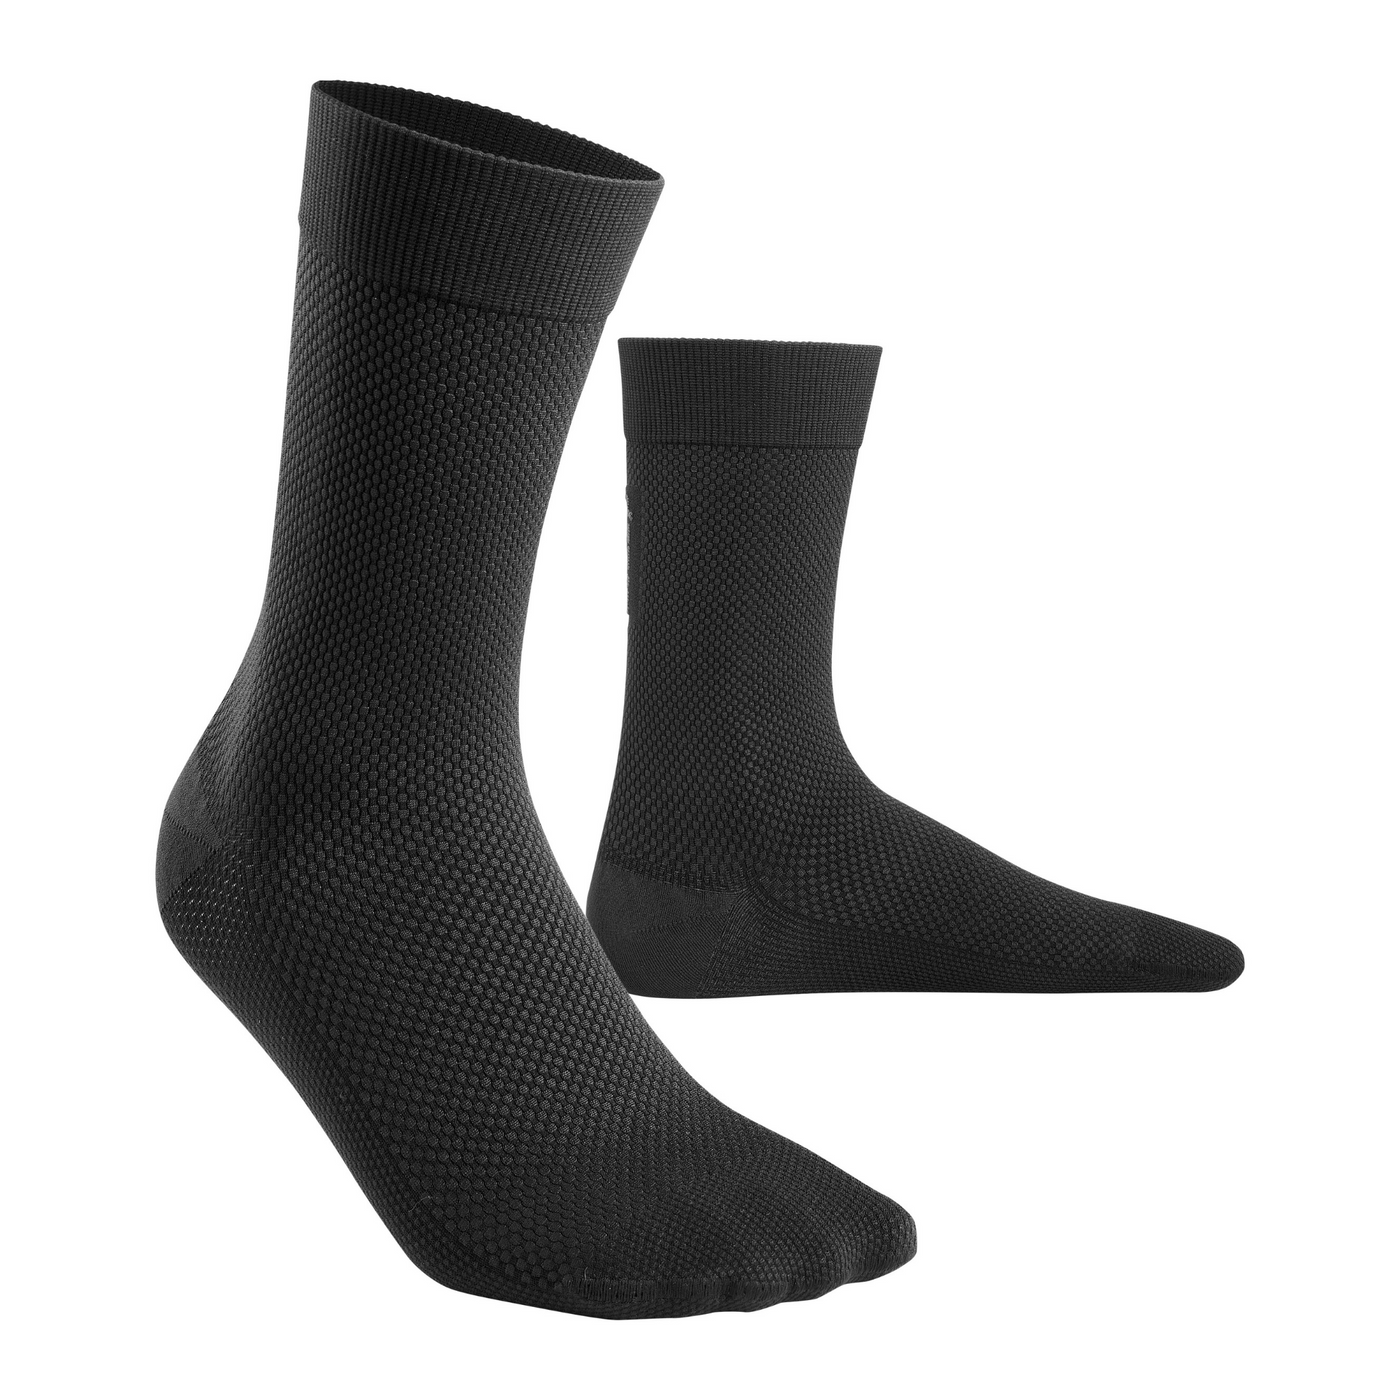 Allday Mid Cut Compression Socks, Men